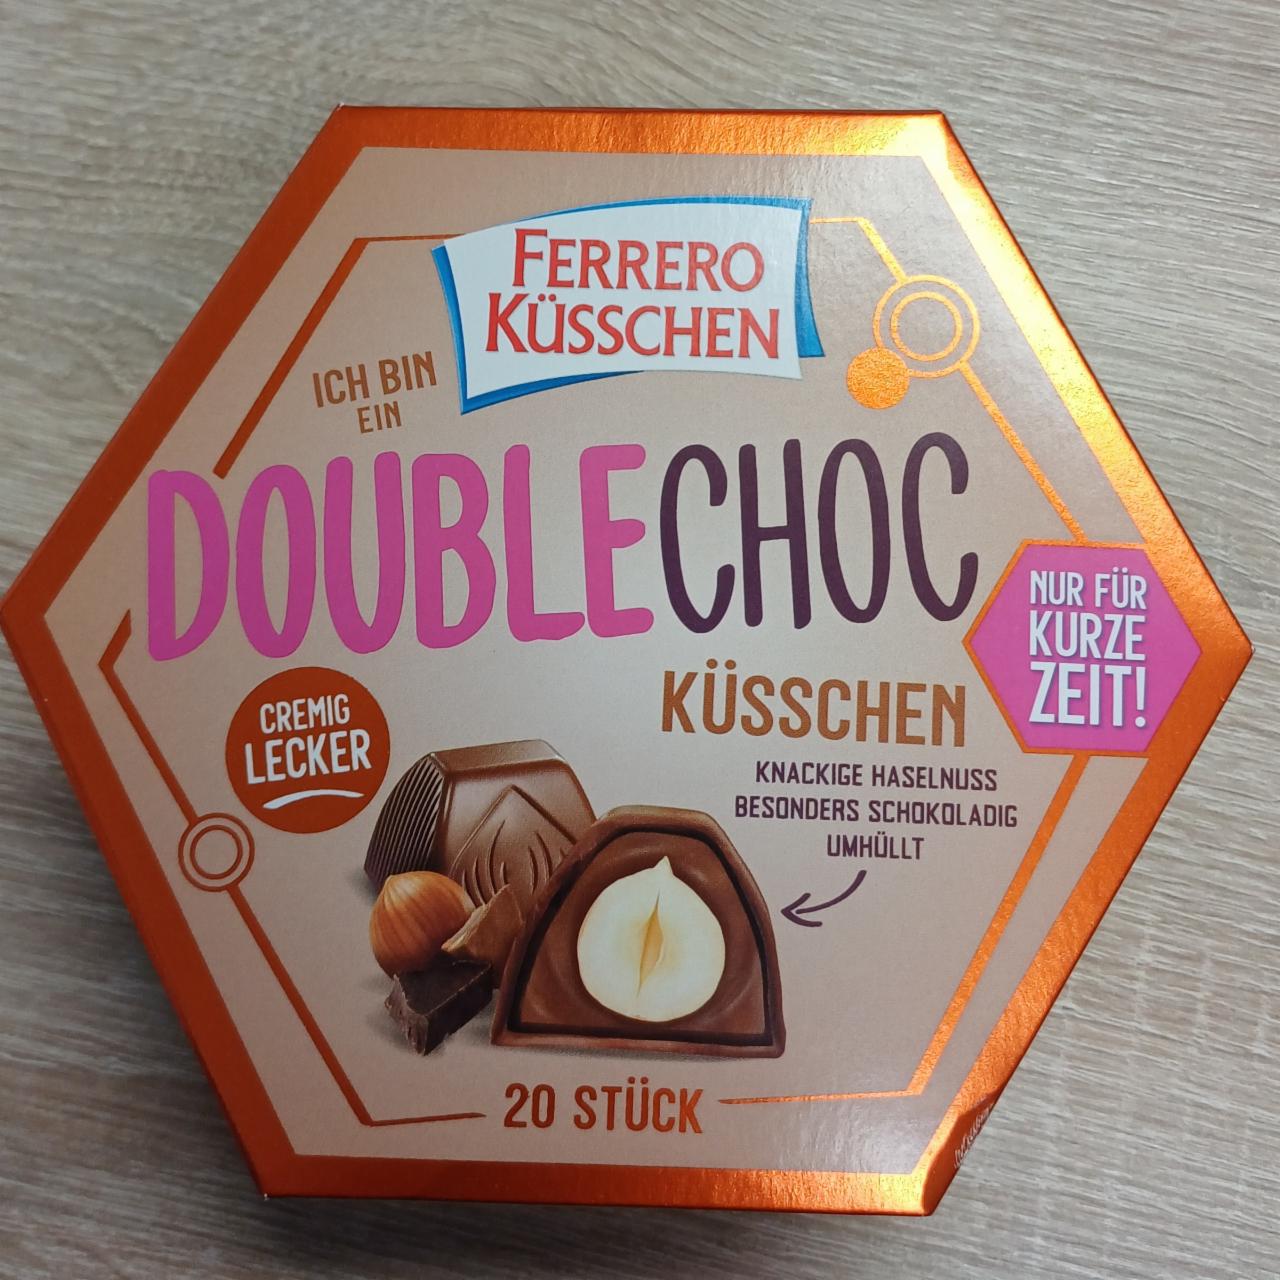 Fotografie - Double Choc küsschen Ferrero